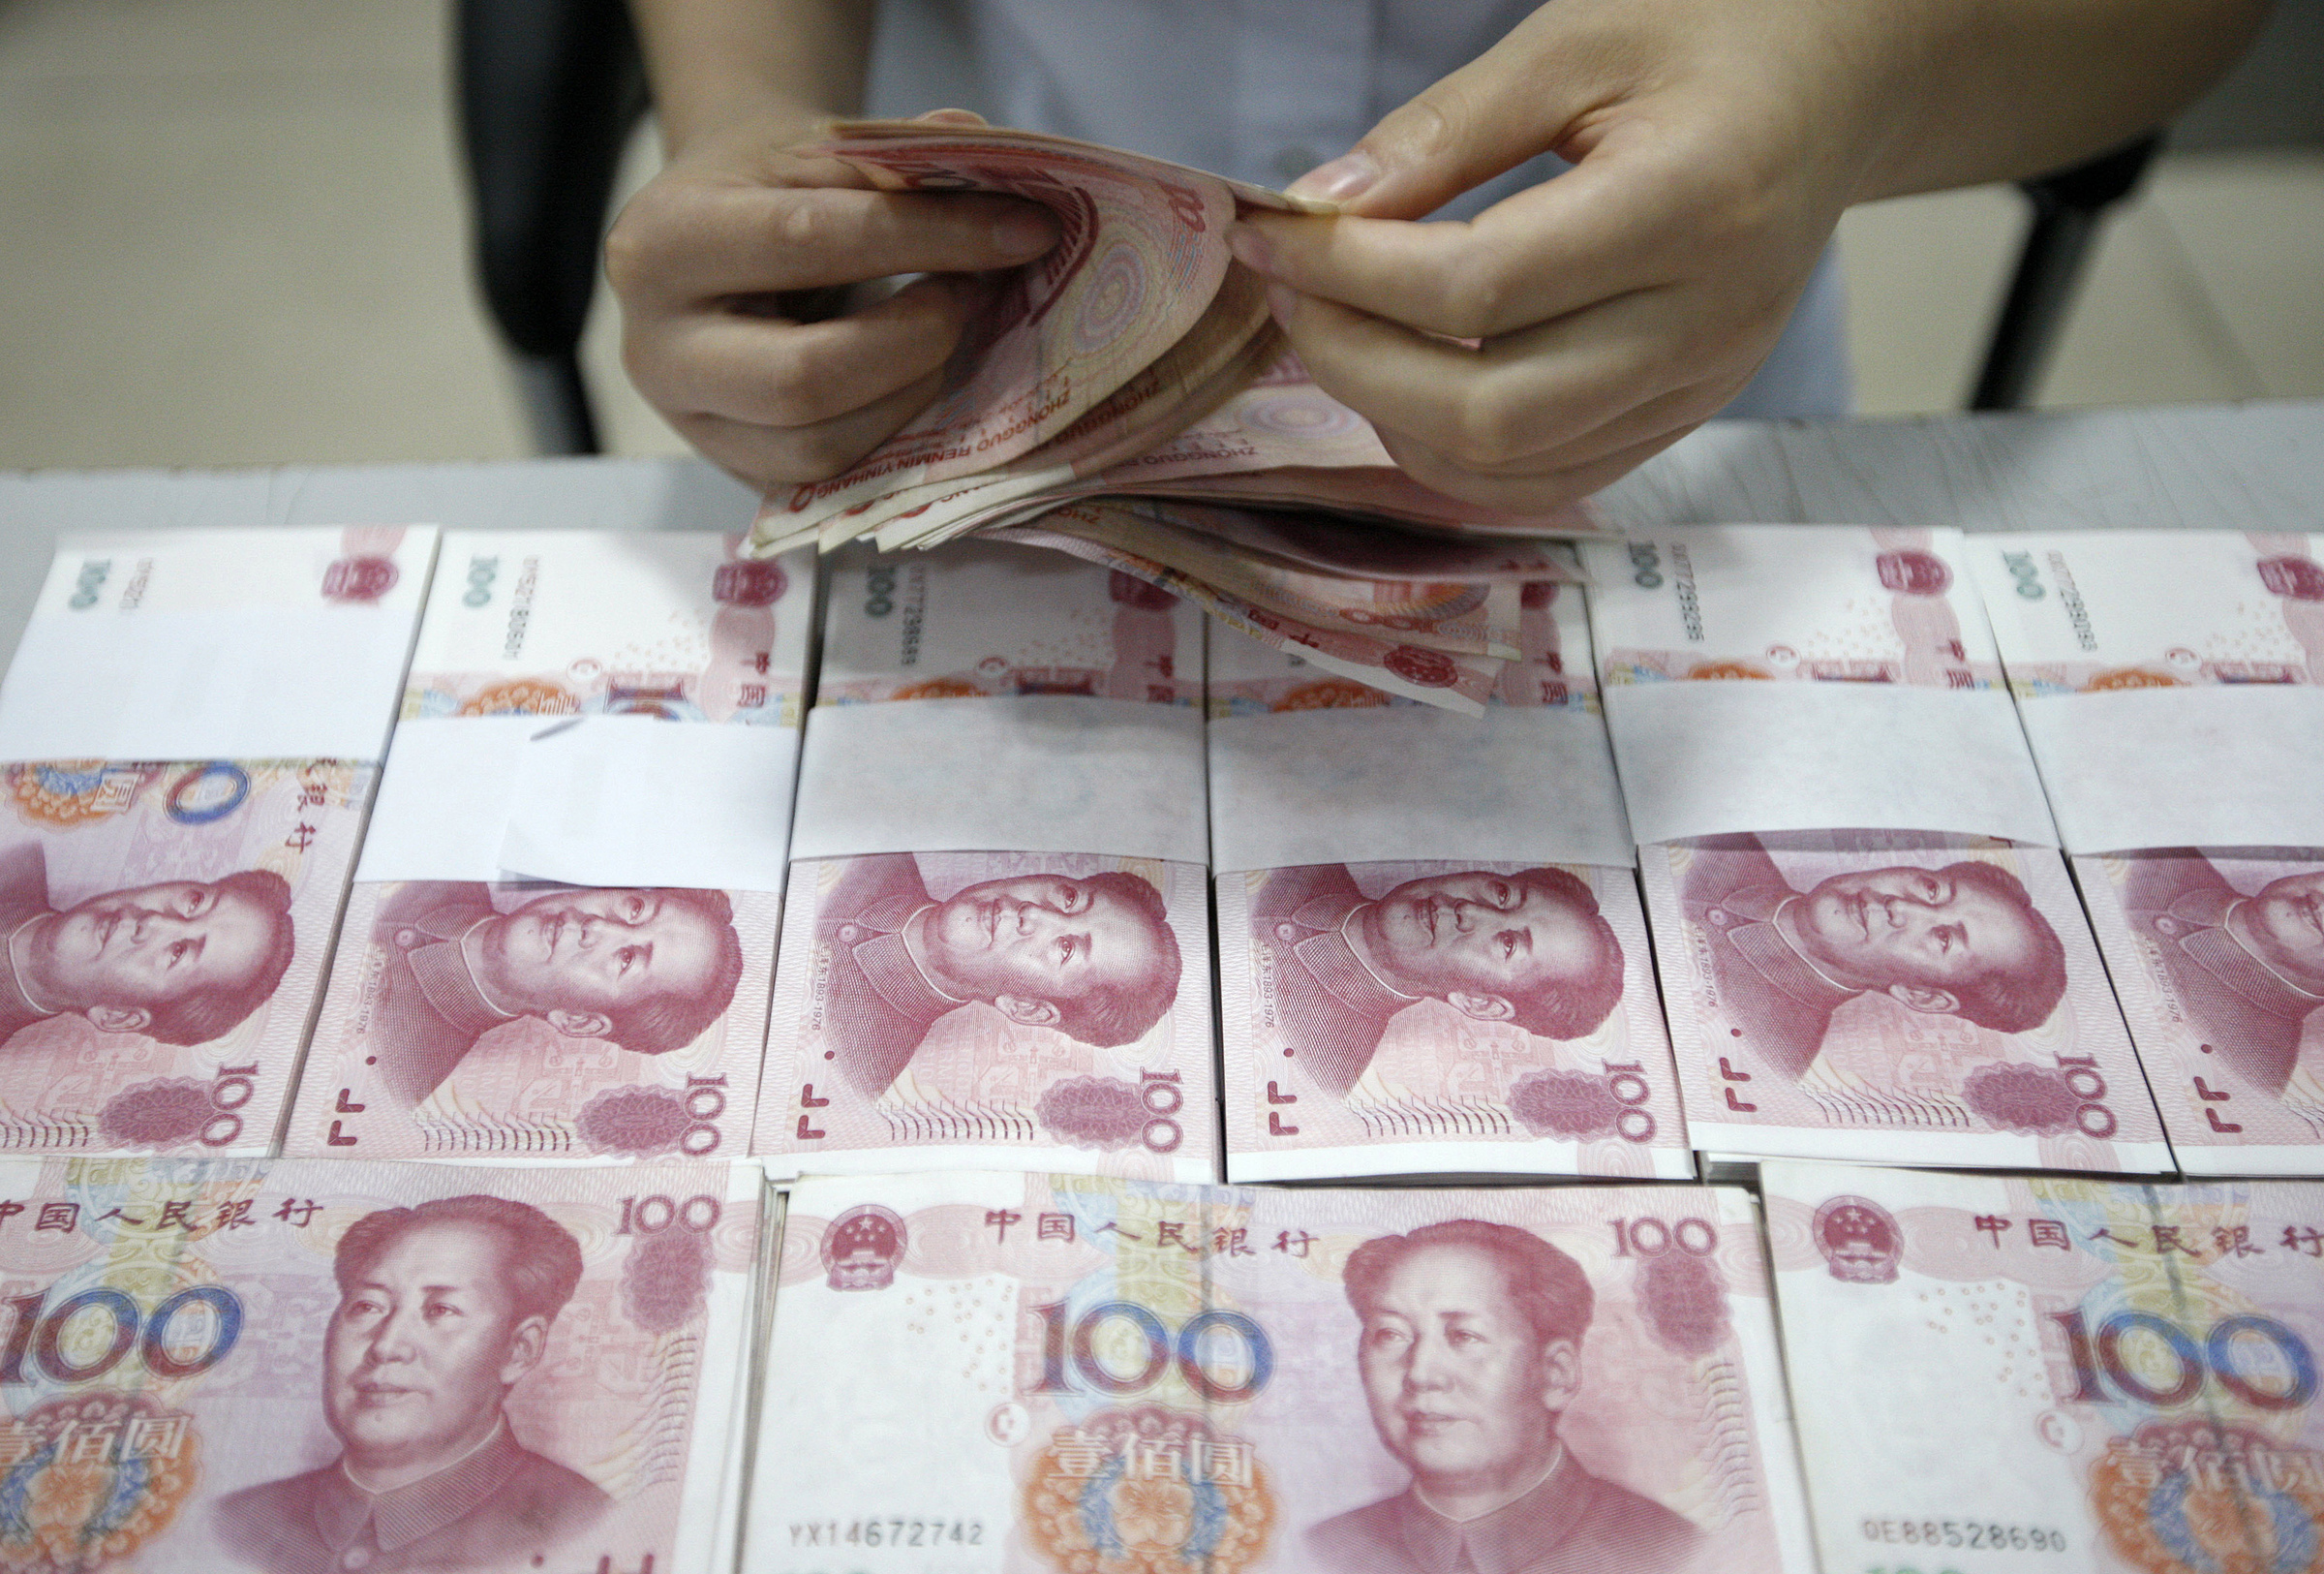 Nhân viên đếm tiền tại một ngân hàng ở An Huy (Trung Quốc). Ảnh: Reuters